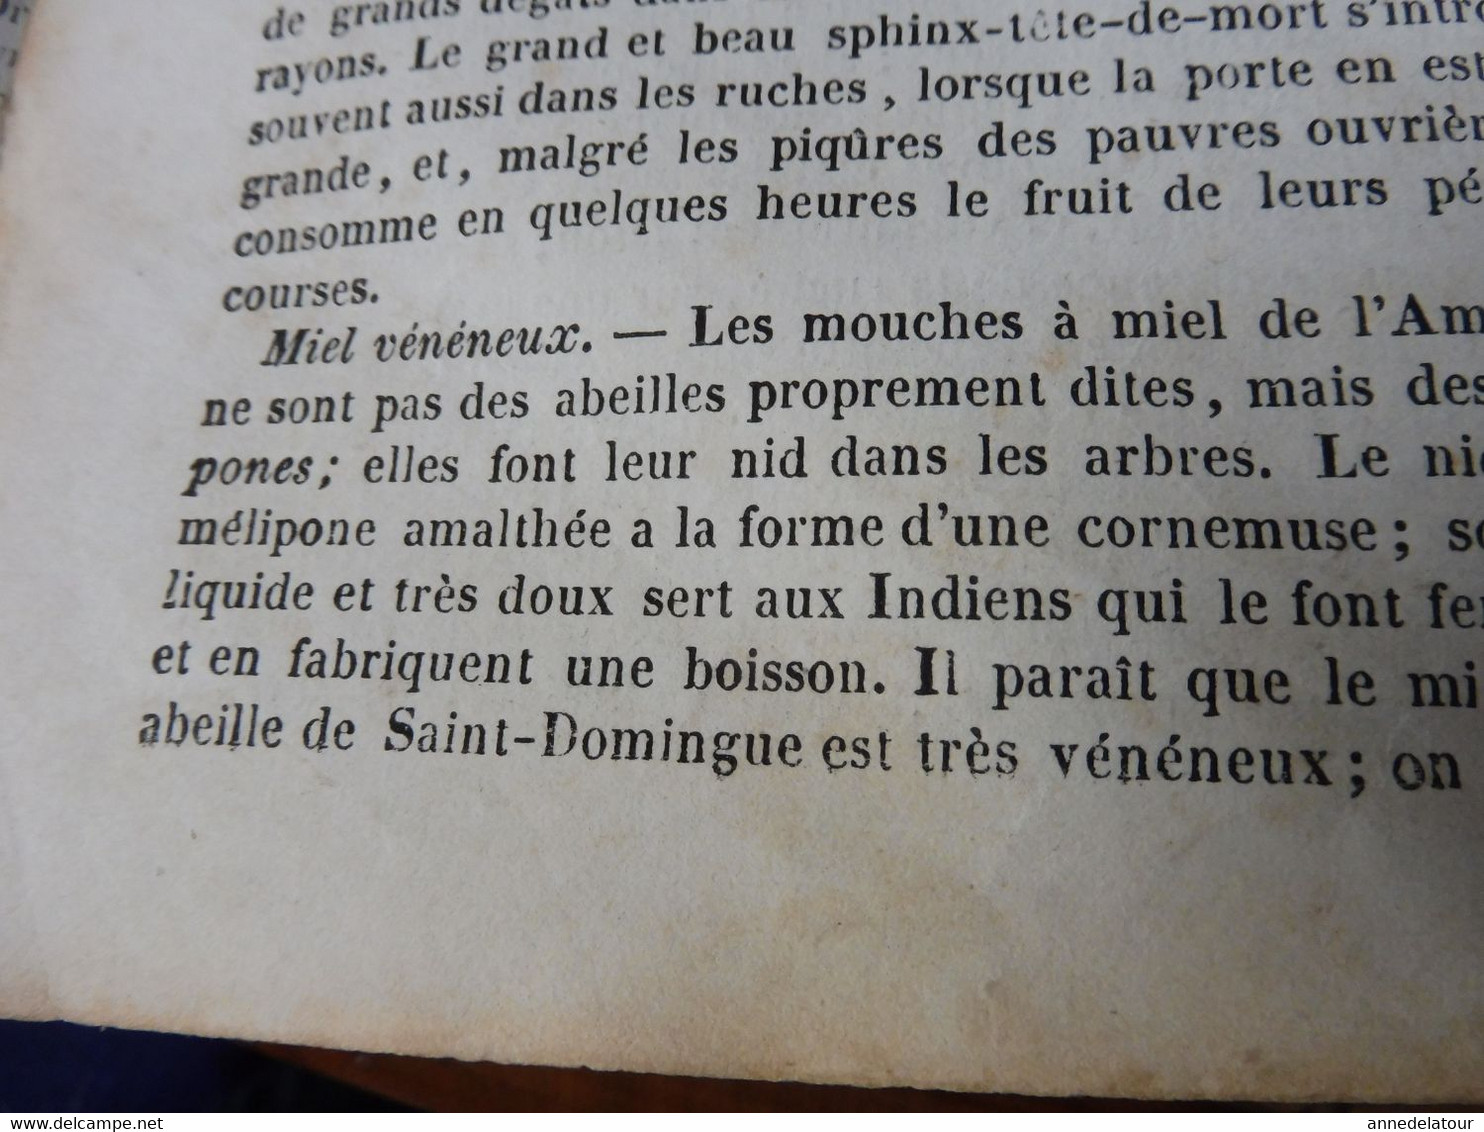 1839  Les abeilles (Ruche, Reine, Cire et Miel, Essaim, Ennemis des abeilles, Miel vénéneux, etc); JAVA et théâtres; etc